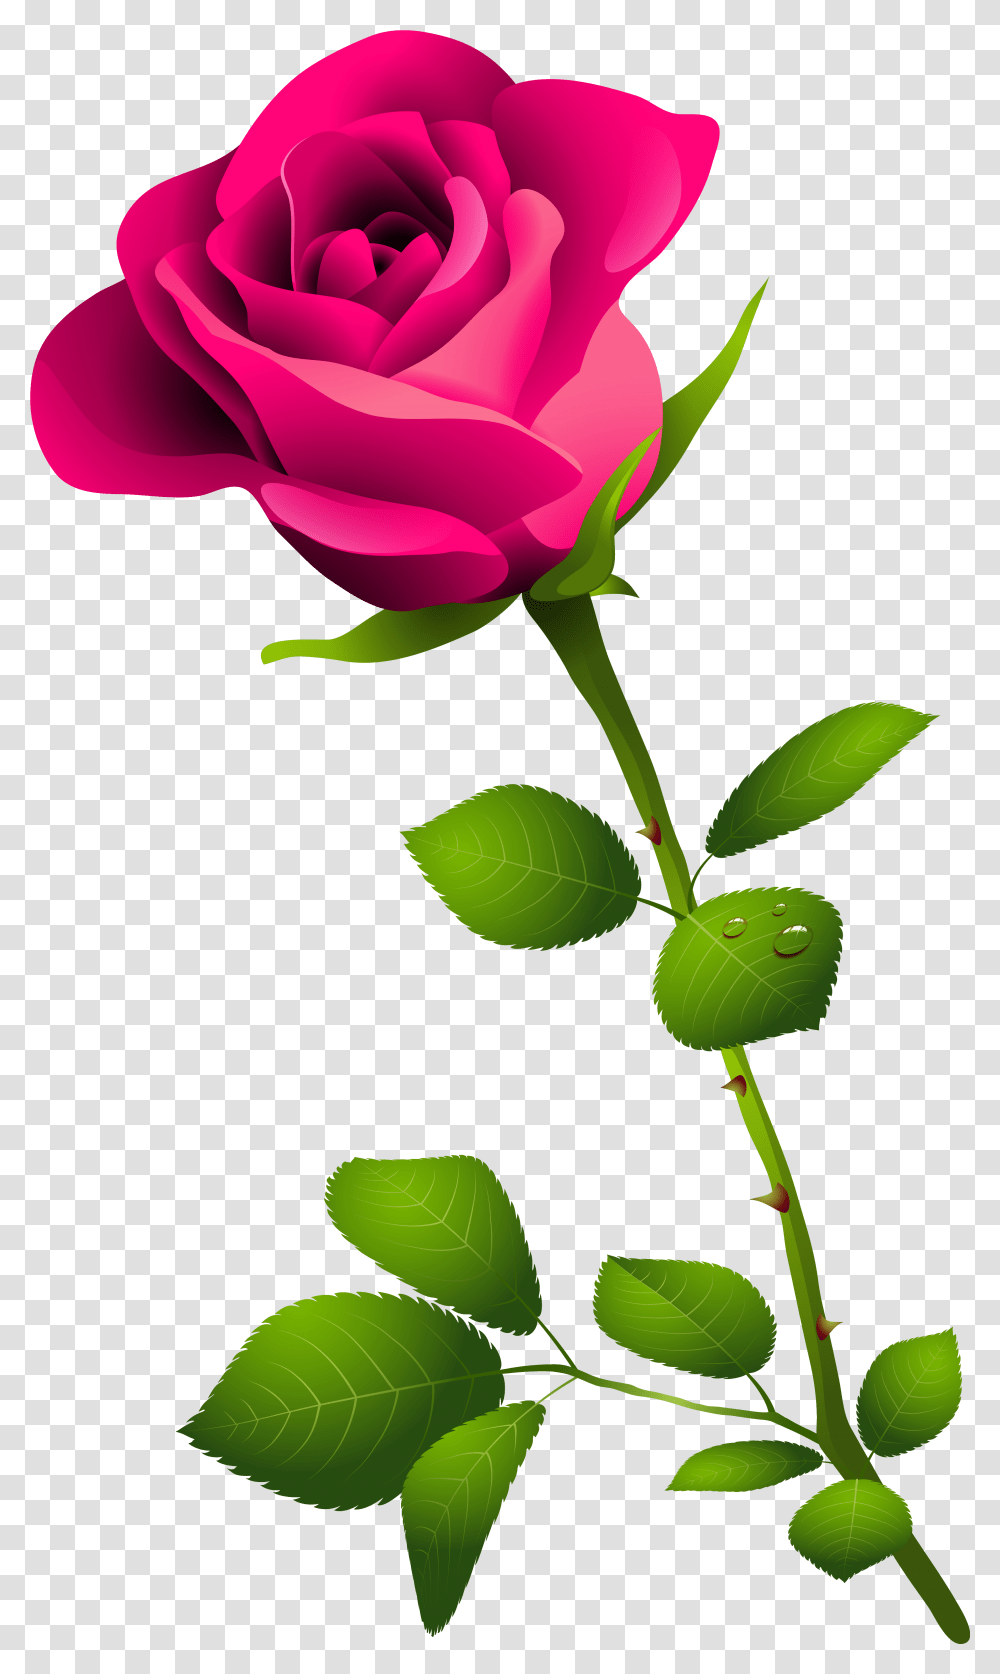 Flower Stem Picture Pink Rose Clipart Background, Plant, Blossom, Leaf, Citrus Fruit Transparent Png